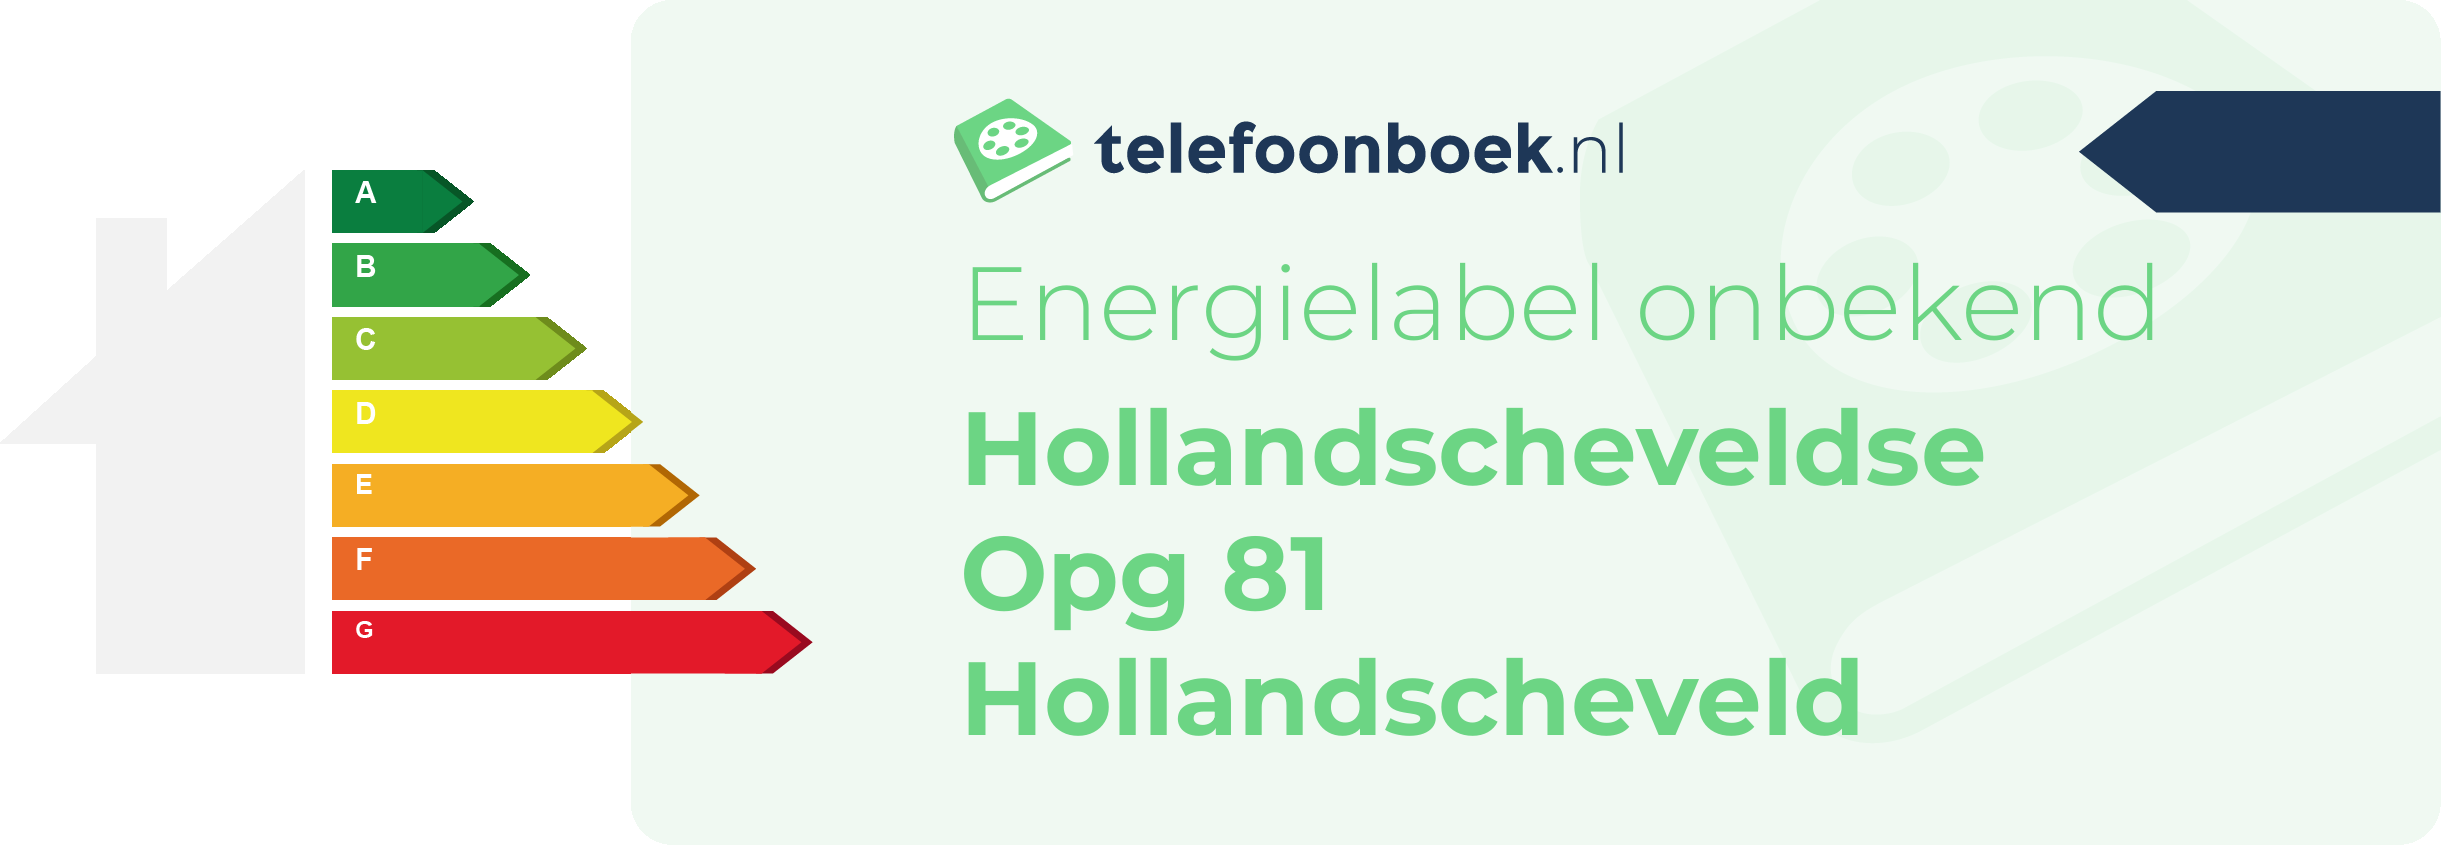 Energielabel Hollandscheveldse Opg 81 Hollandscheveld